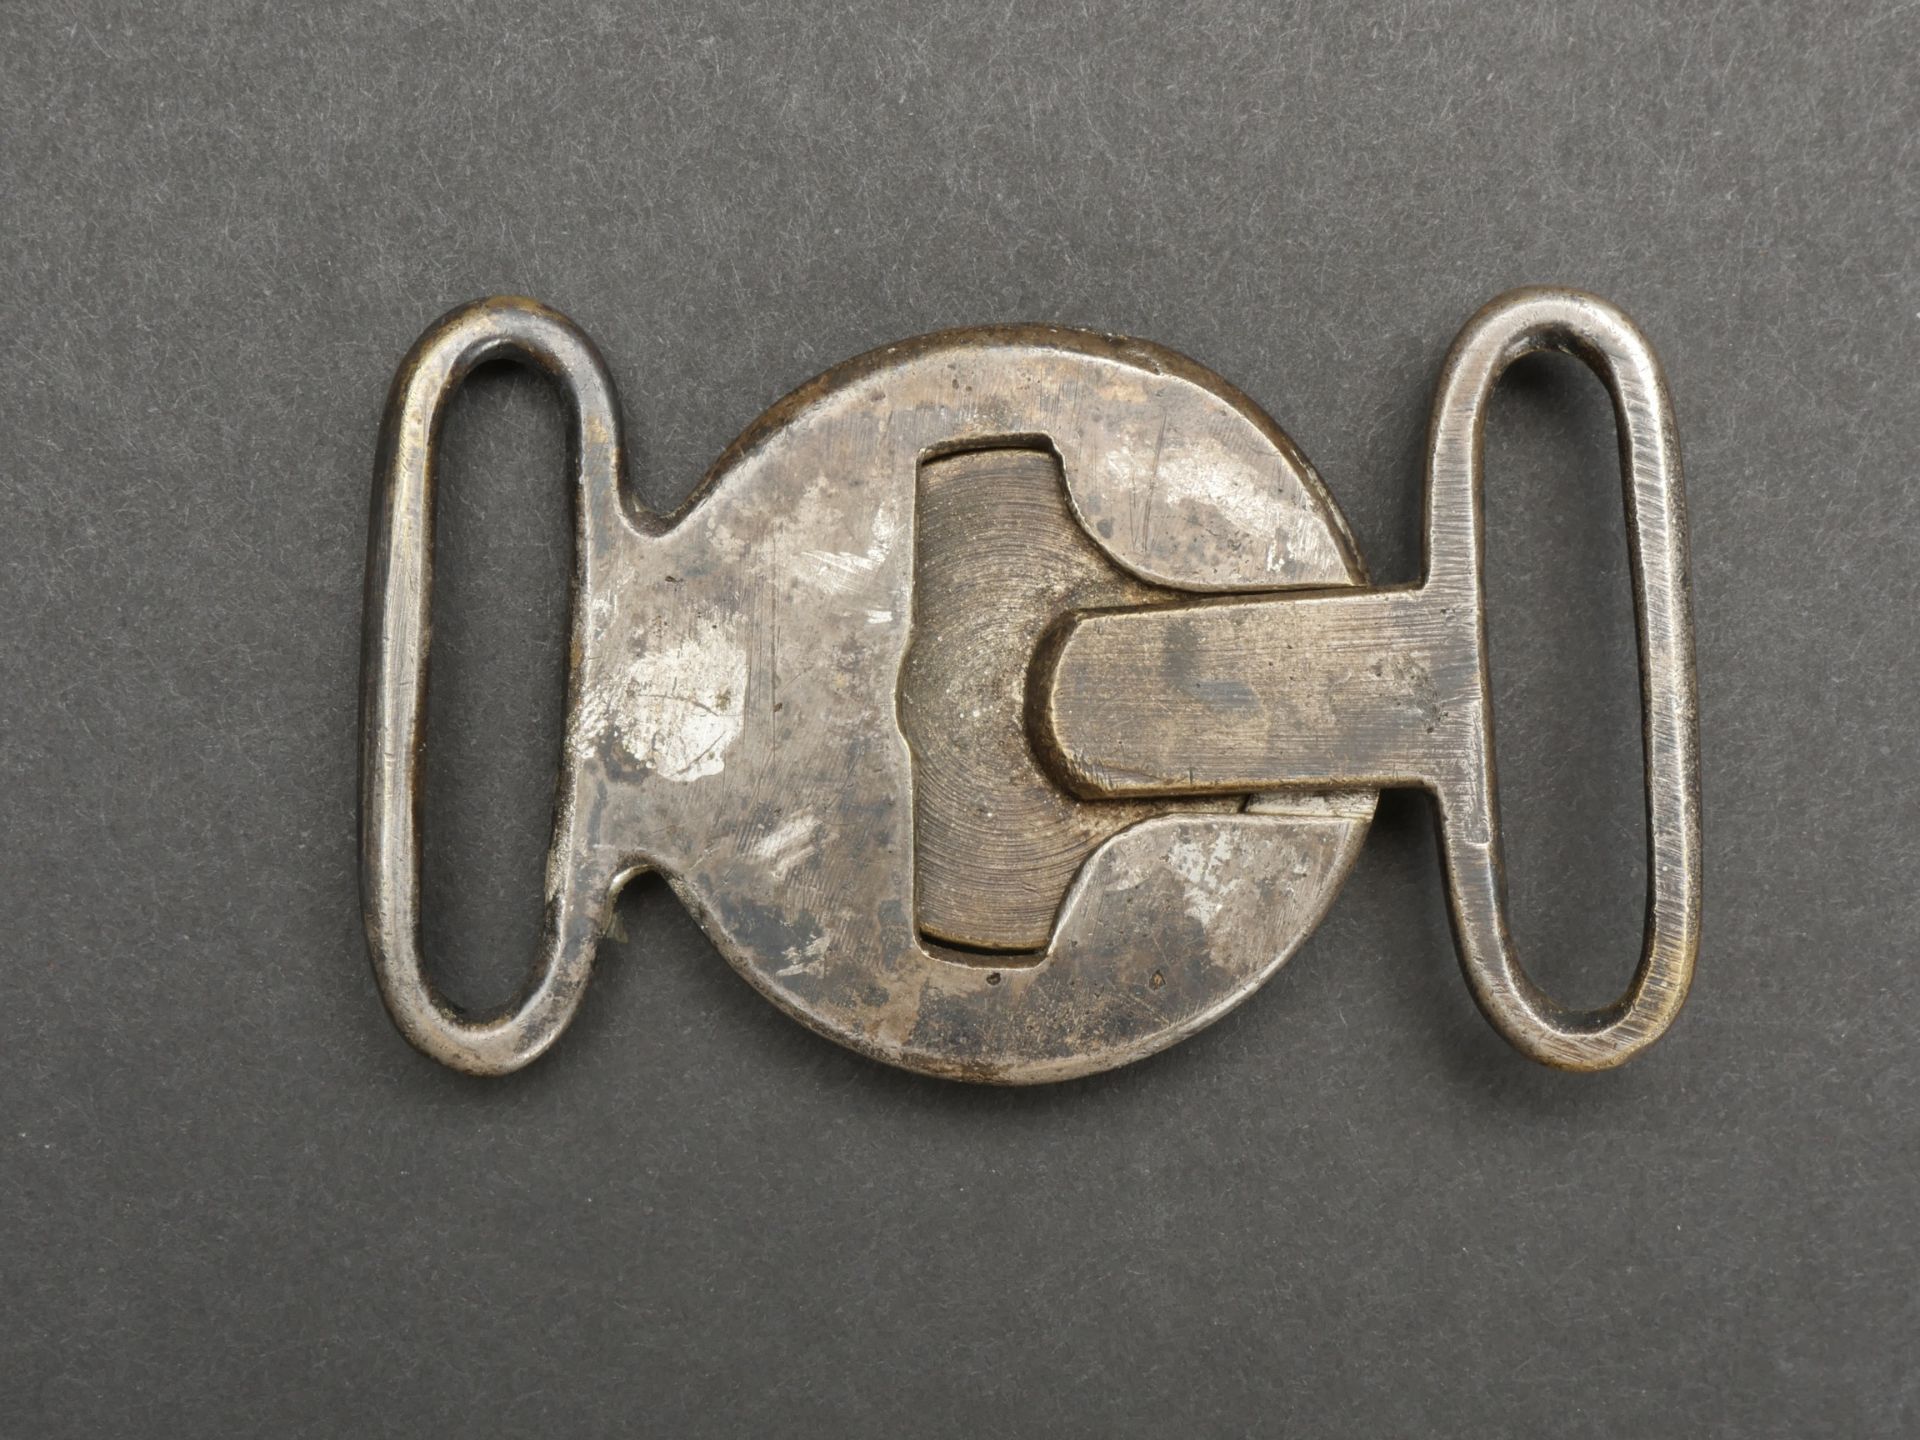 Boucle ceinture norvegienne. Norwegian belt buckle.  - Image 3 of 5